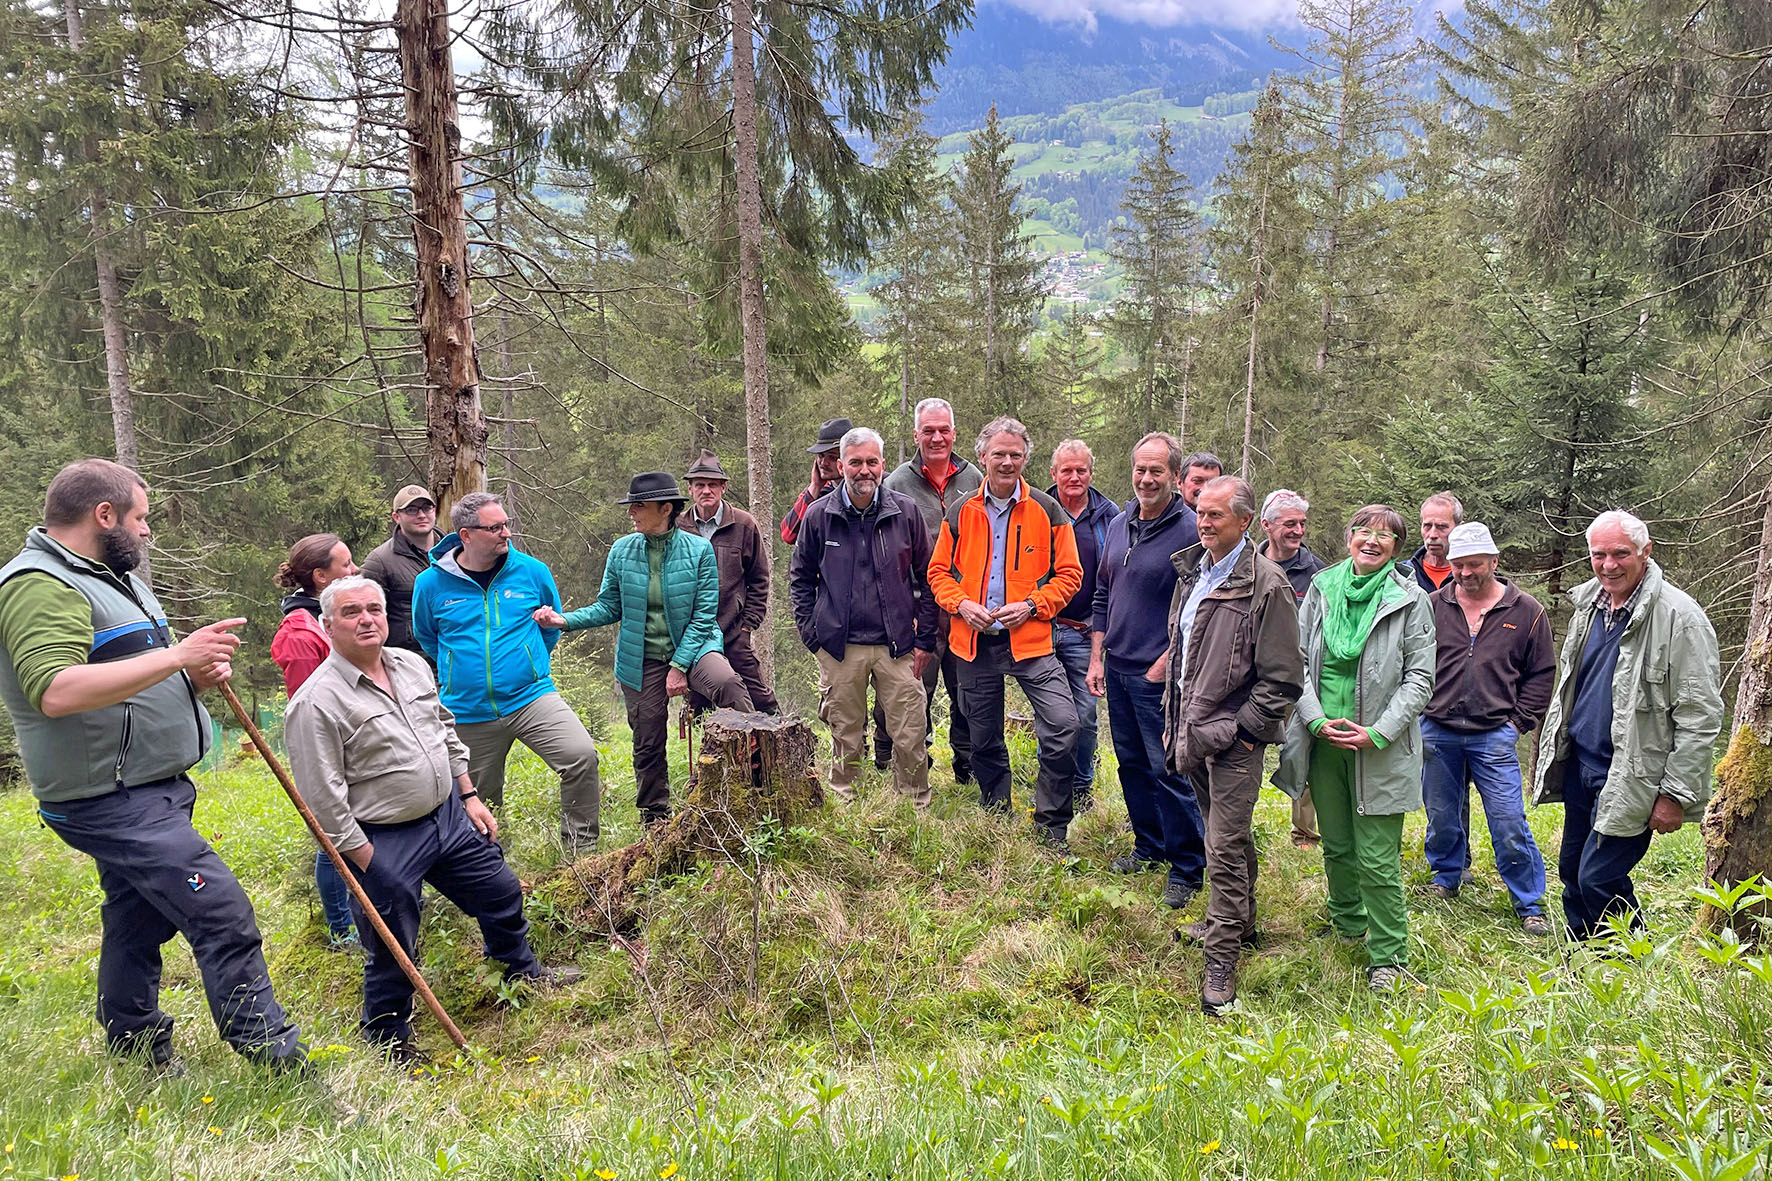 Pressebild: Diskussion der Gruppe an einem stark aufgelichteten Schutzwald in Siedlungsnähe am Fuß des Grünsteins.